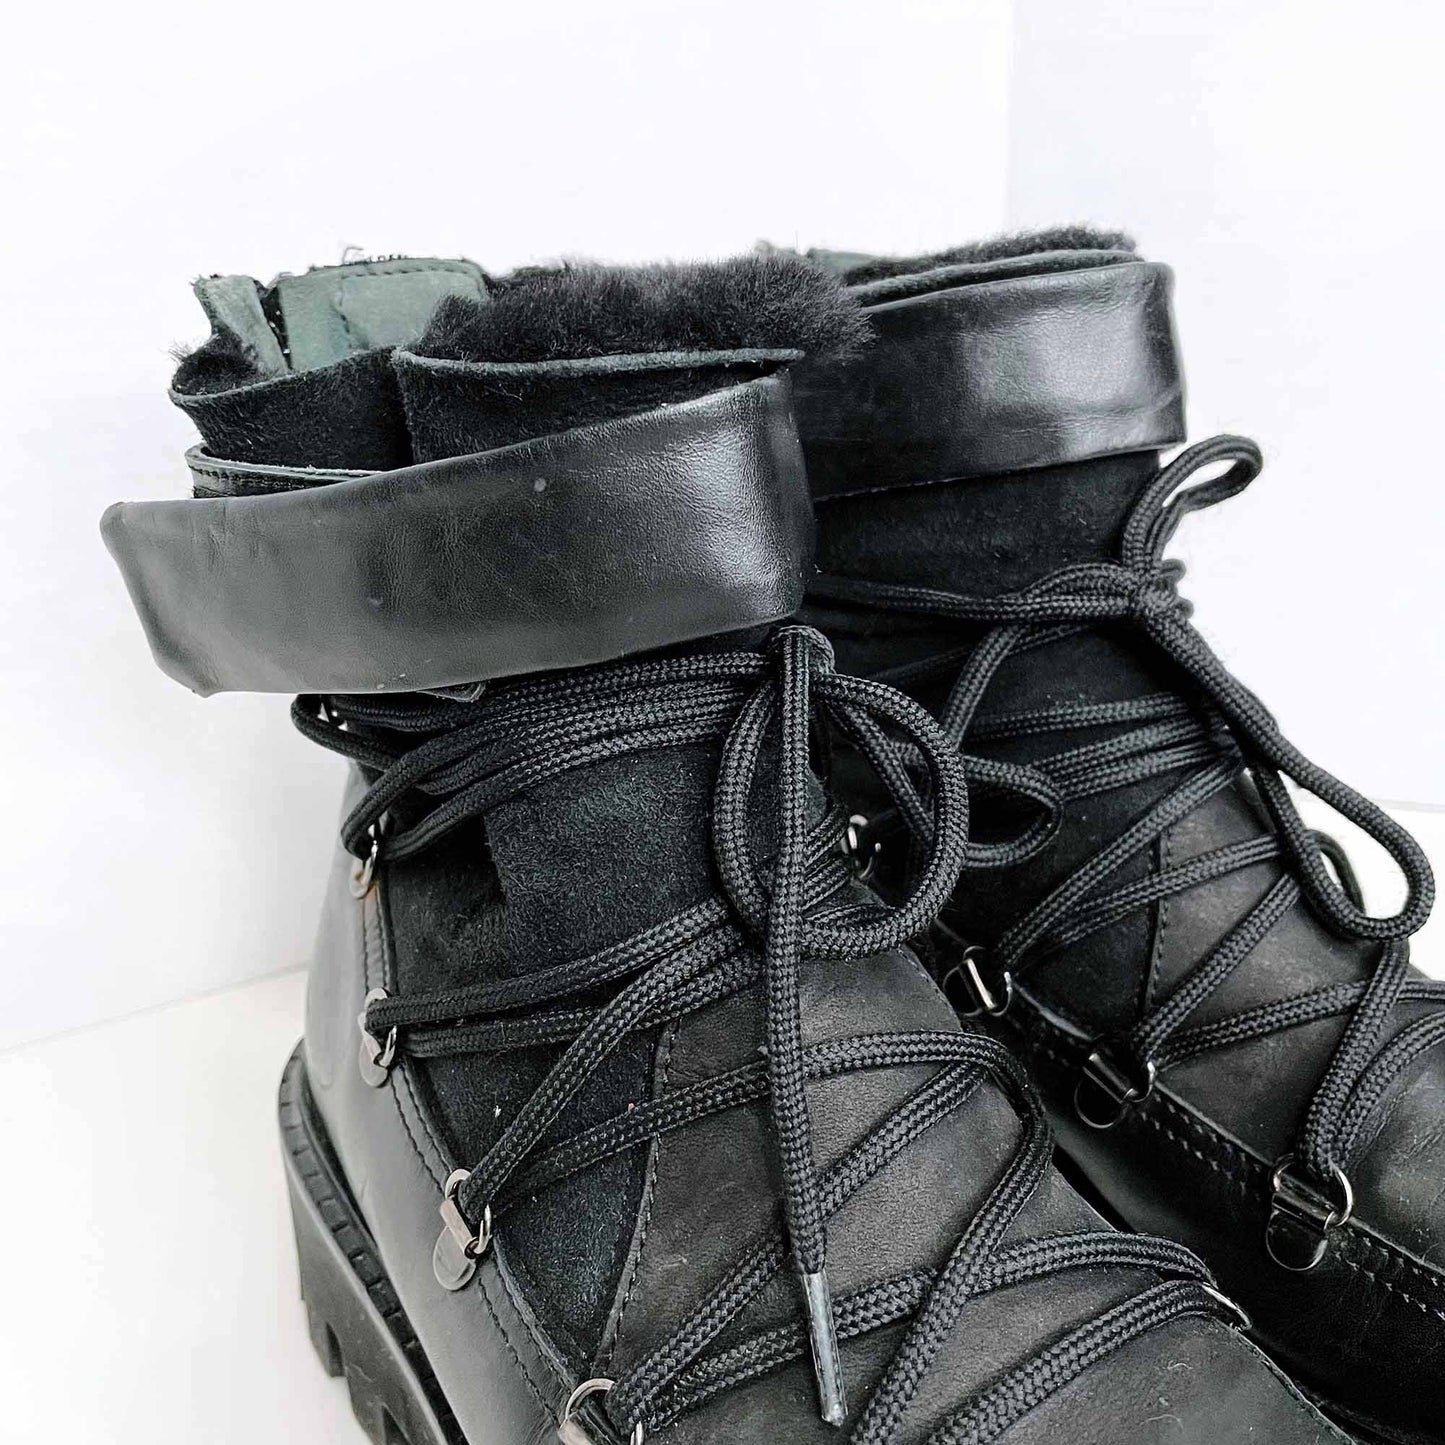 napoleoni sheepskin platform lace up combat boots - size 8